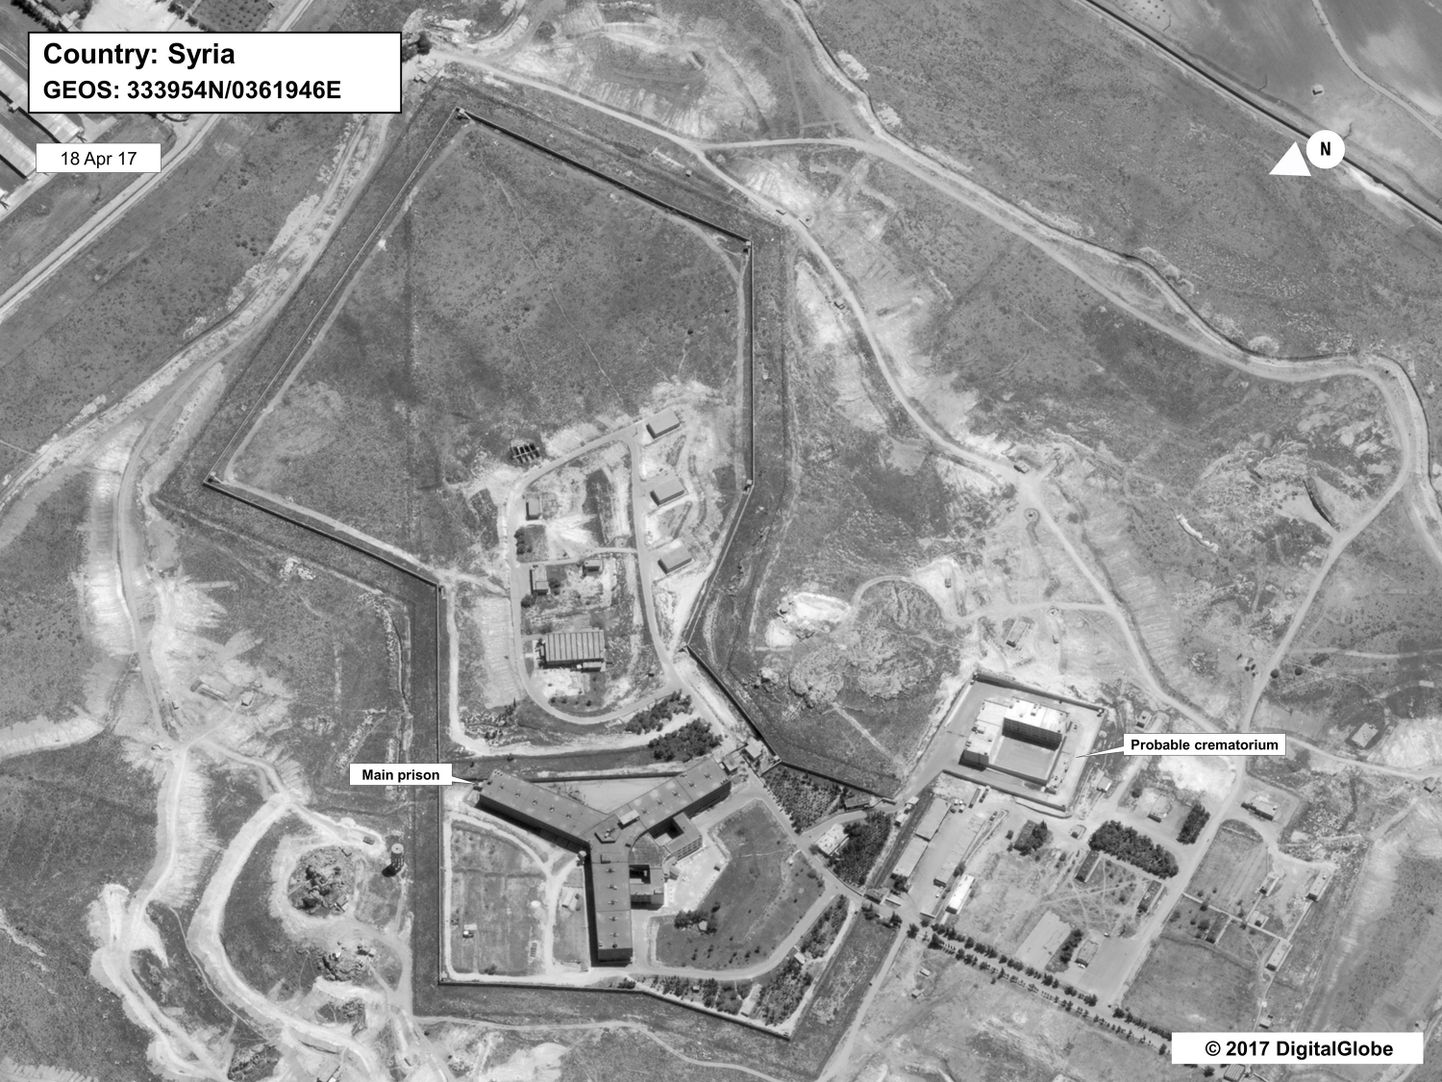 USA jäädvustus Süüria vanglakompleksist, mille juurde kuulub väidetavalt krematoorium (paremal pool).